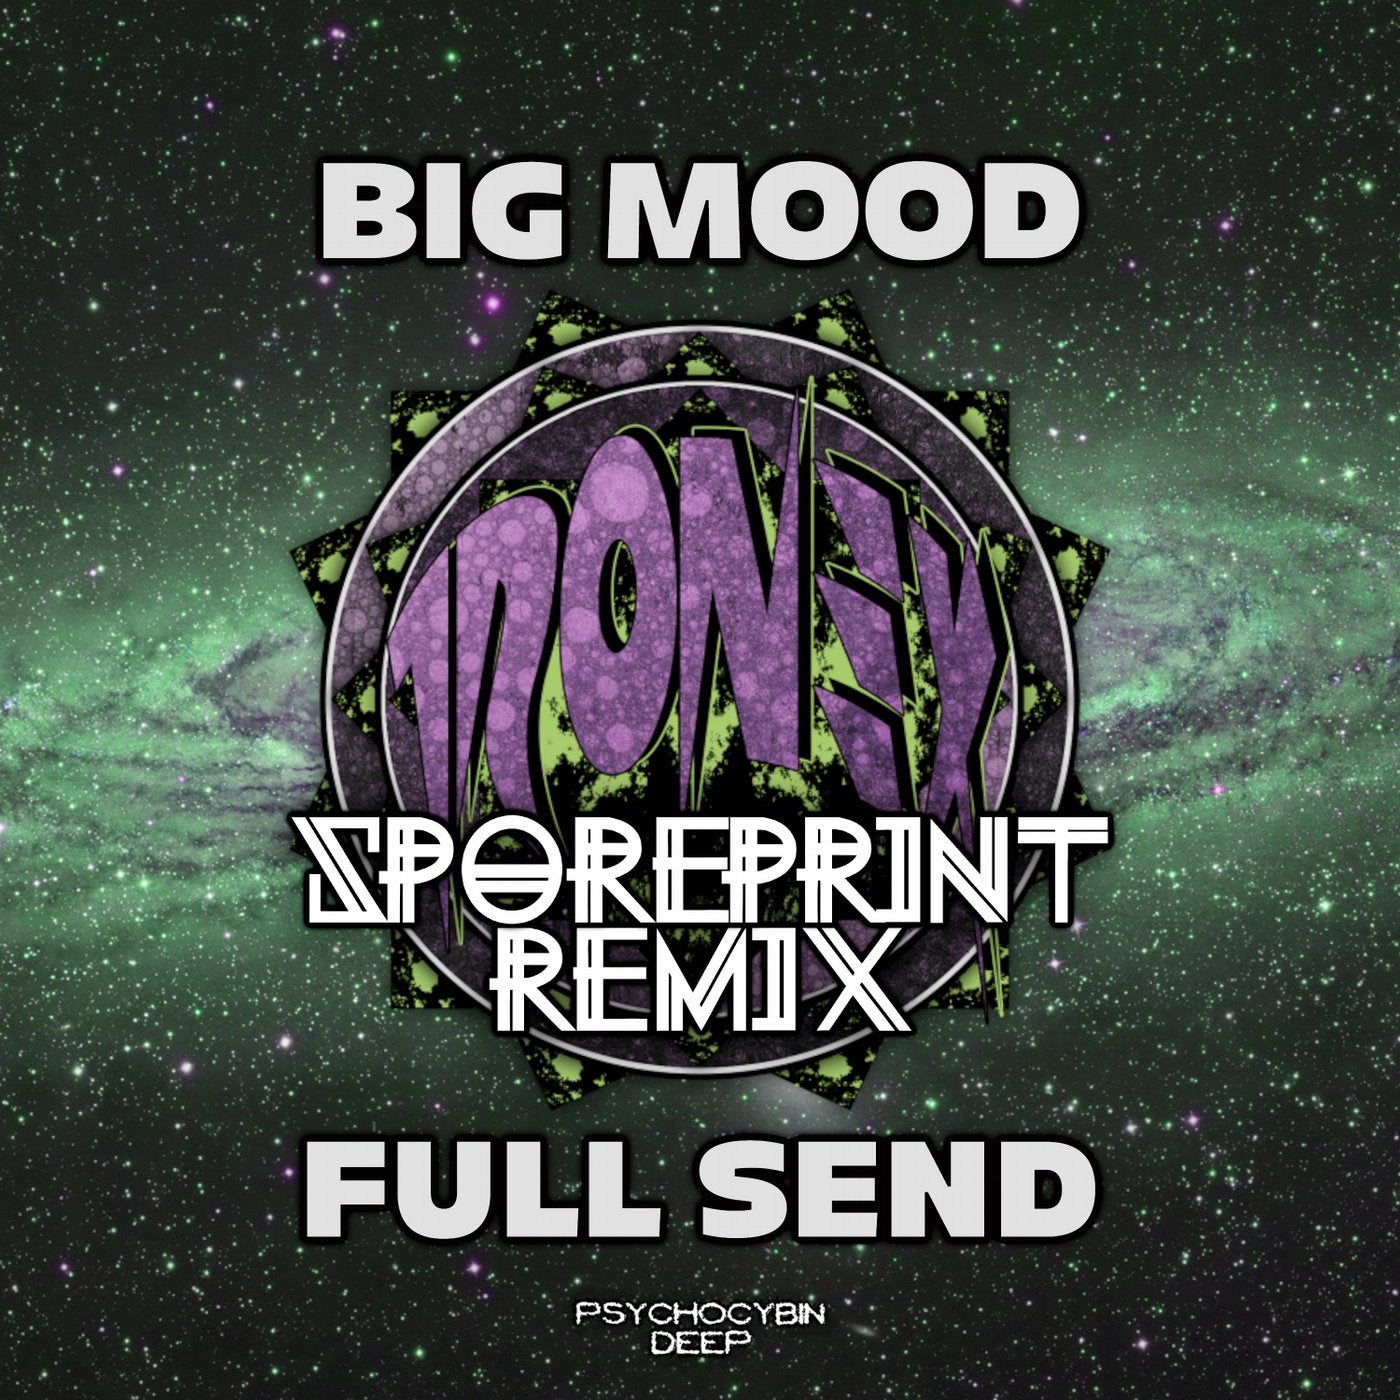 Big Mood, Full Send (Sporeprint Remix)